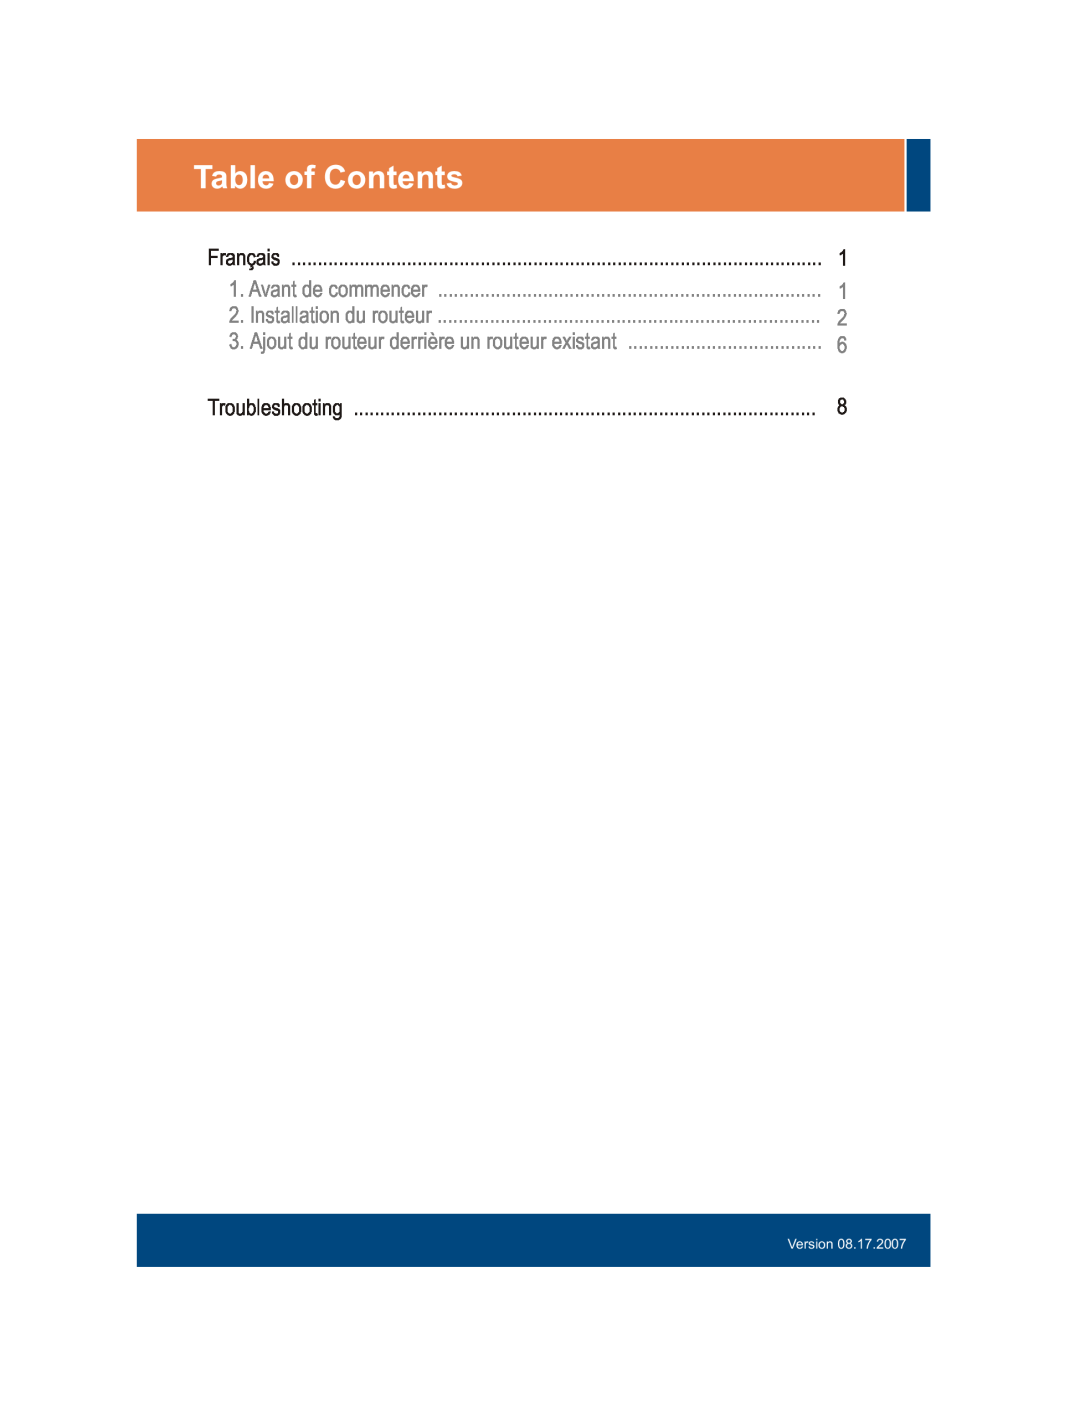 TRENDnet TEW-633GR manual Table of Contents, Français, Avant de commencer, Installation du routeur, Version 